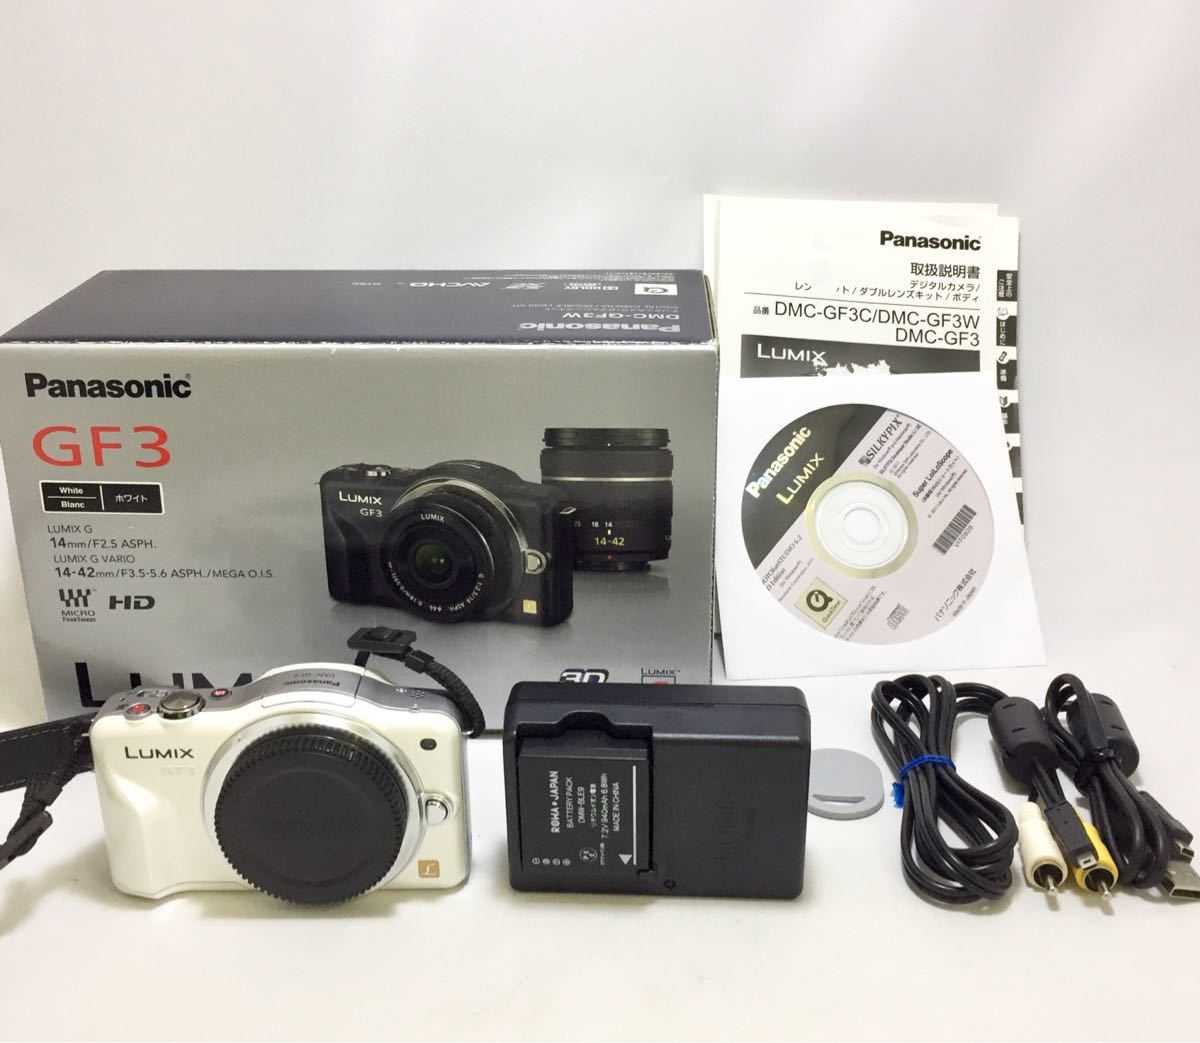 Цифровой фотоаппарат Panasonic Lumix DMC-GF3 body - подробные характеристики обзоры видео фото Цены в интернет-магазинах где можно купить цифровую фотоаппарат Panasonic Lumix DMC-GF3 body